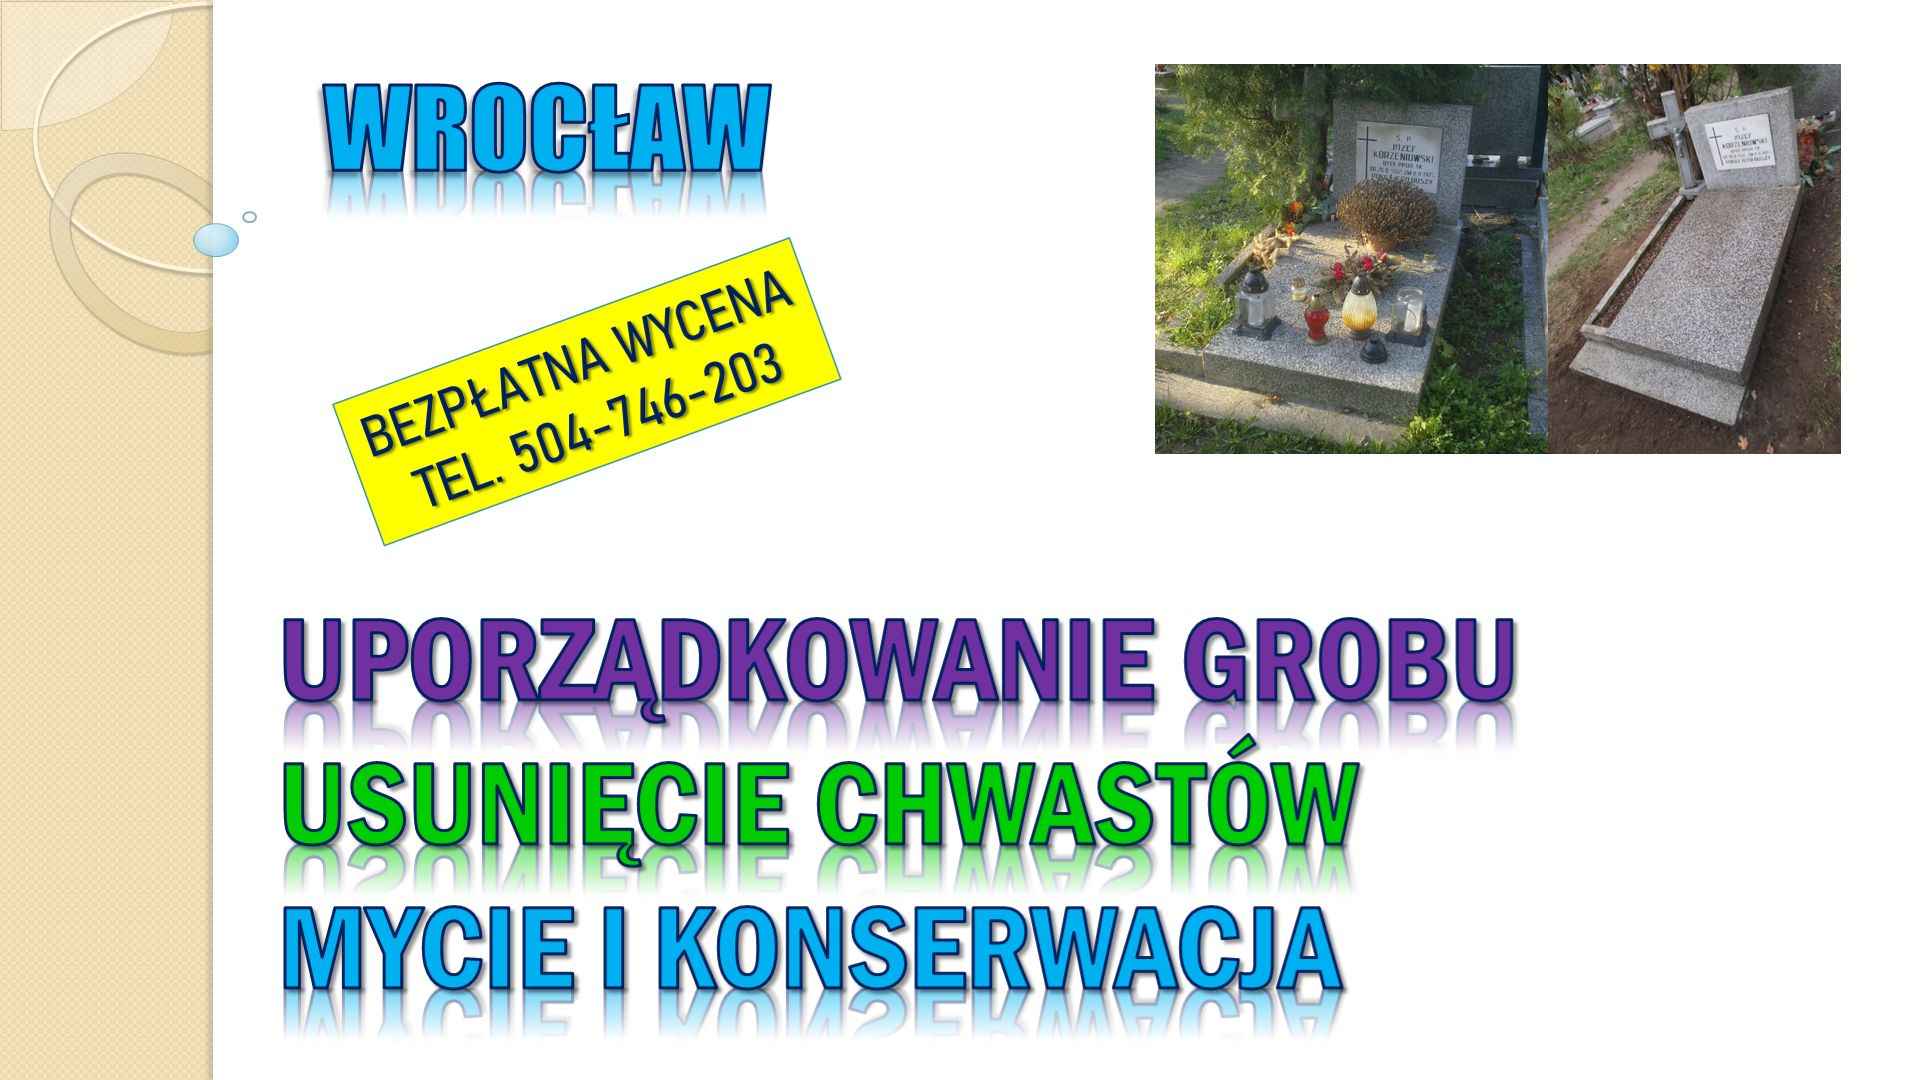 Opieka nad grobem, cennik t504746203, Wrocław, firma sprzątająca groby Psie Pole - zdjęcie 4